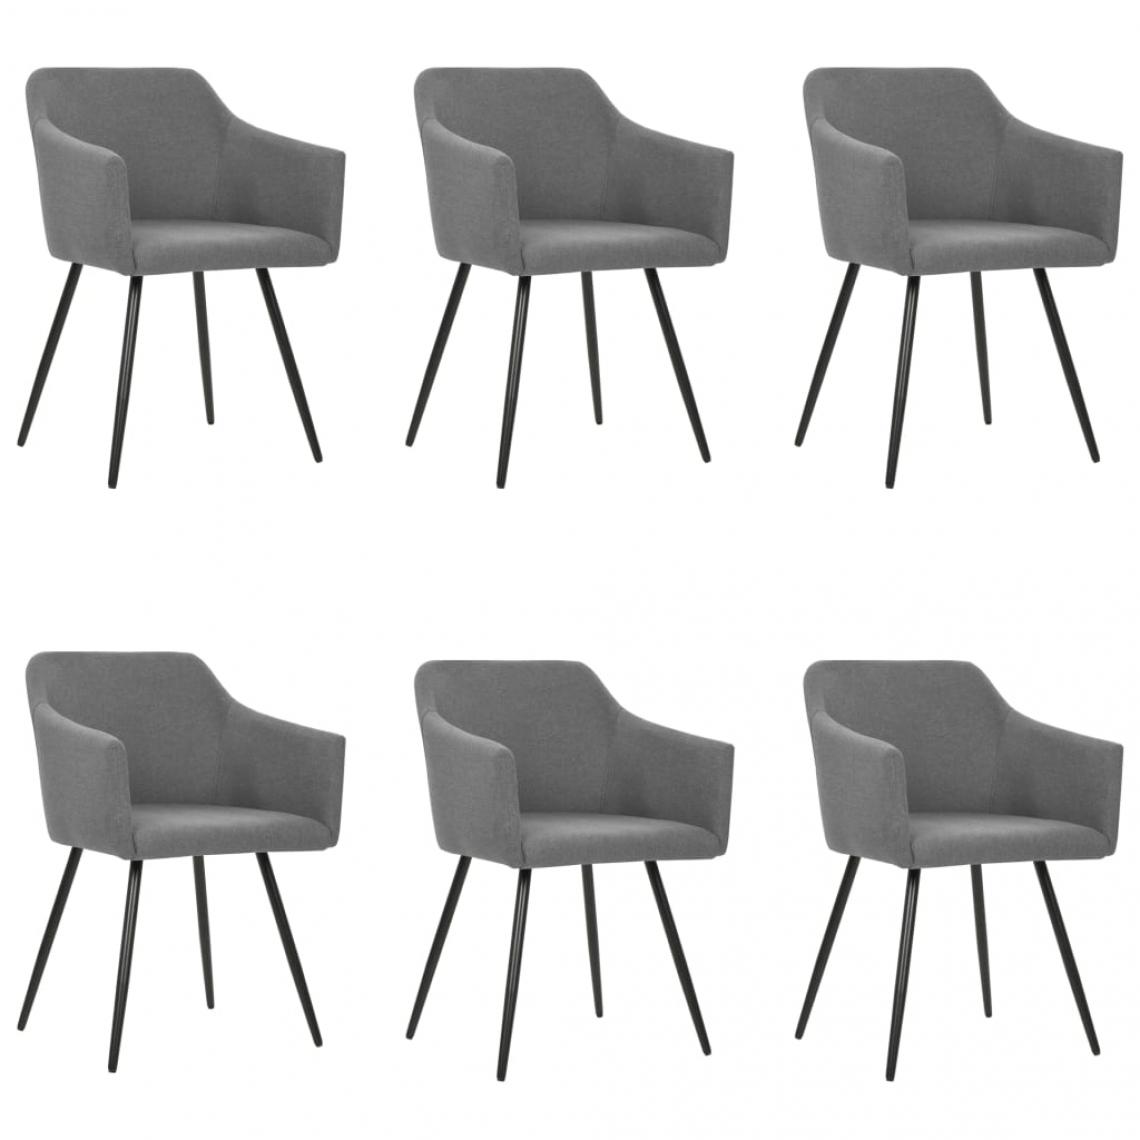 Decoshop26 - Lot de 6 chaises de salle à manger cuisine design classique en tissu gris clair CDS022414 - Chaises